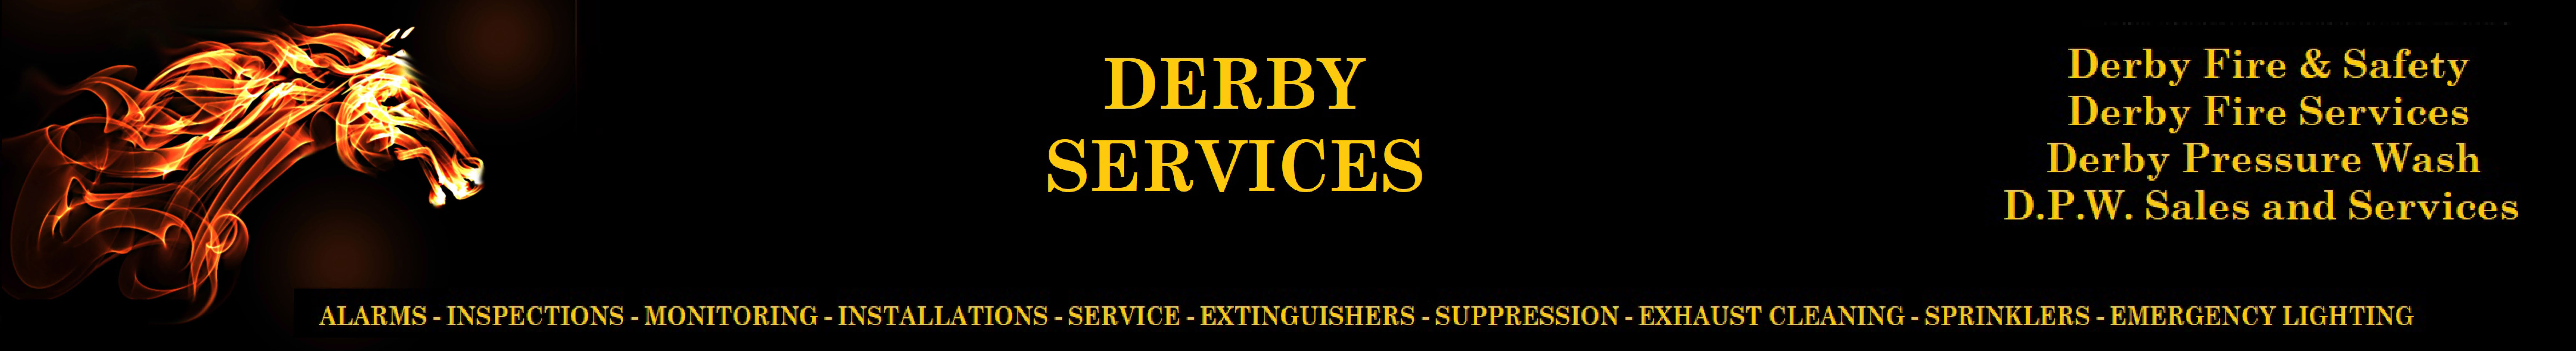 Derby Services